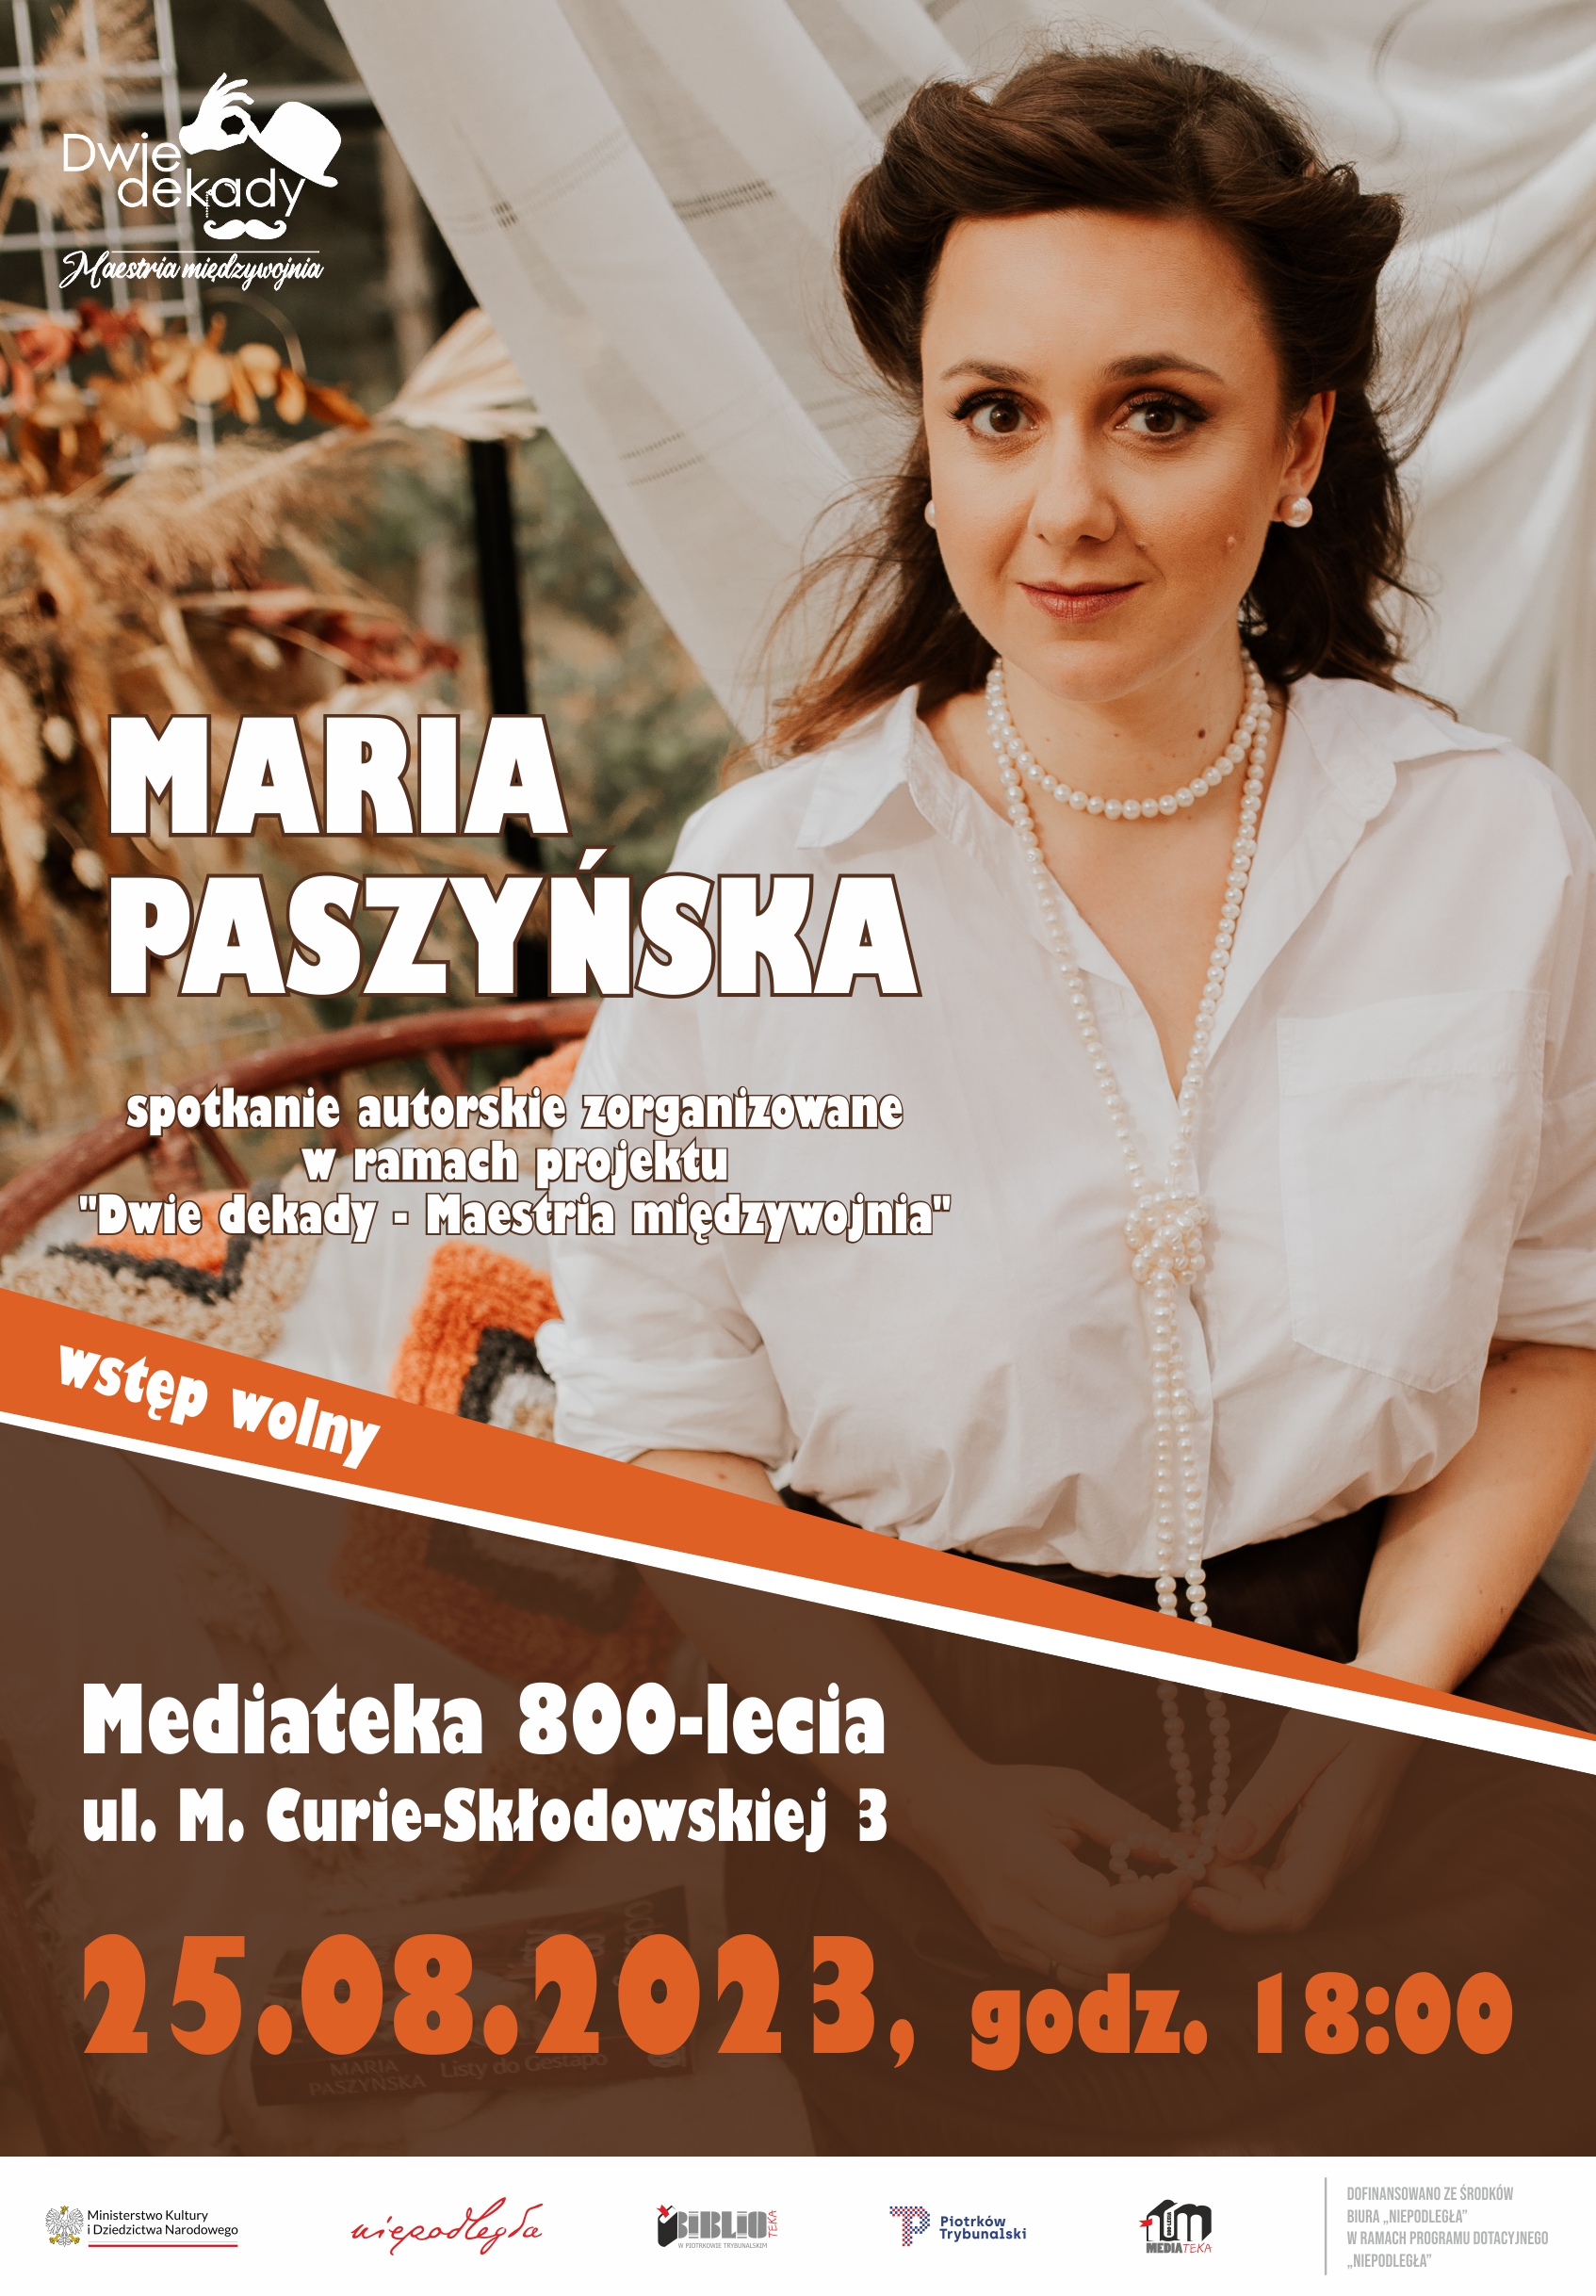 Maria Paszyska / Spotkanie autorskie w Mediatece 800-lecia w Piotrkowie Trybunalskim